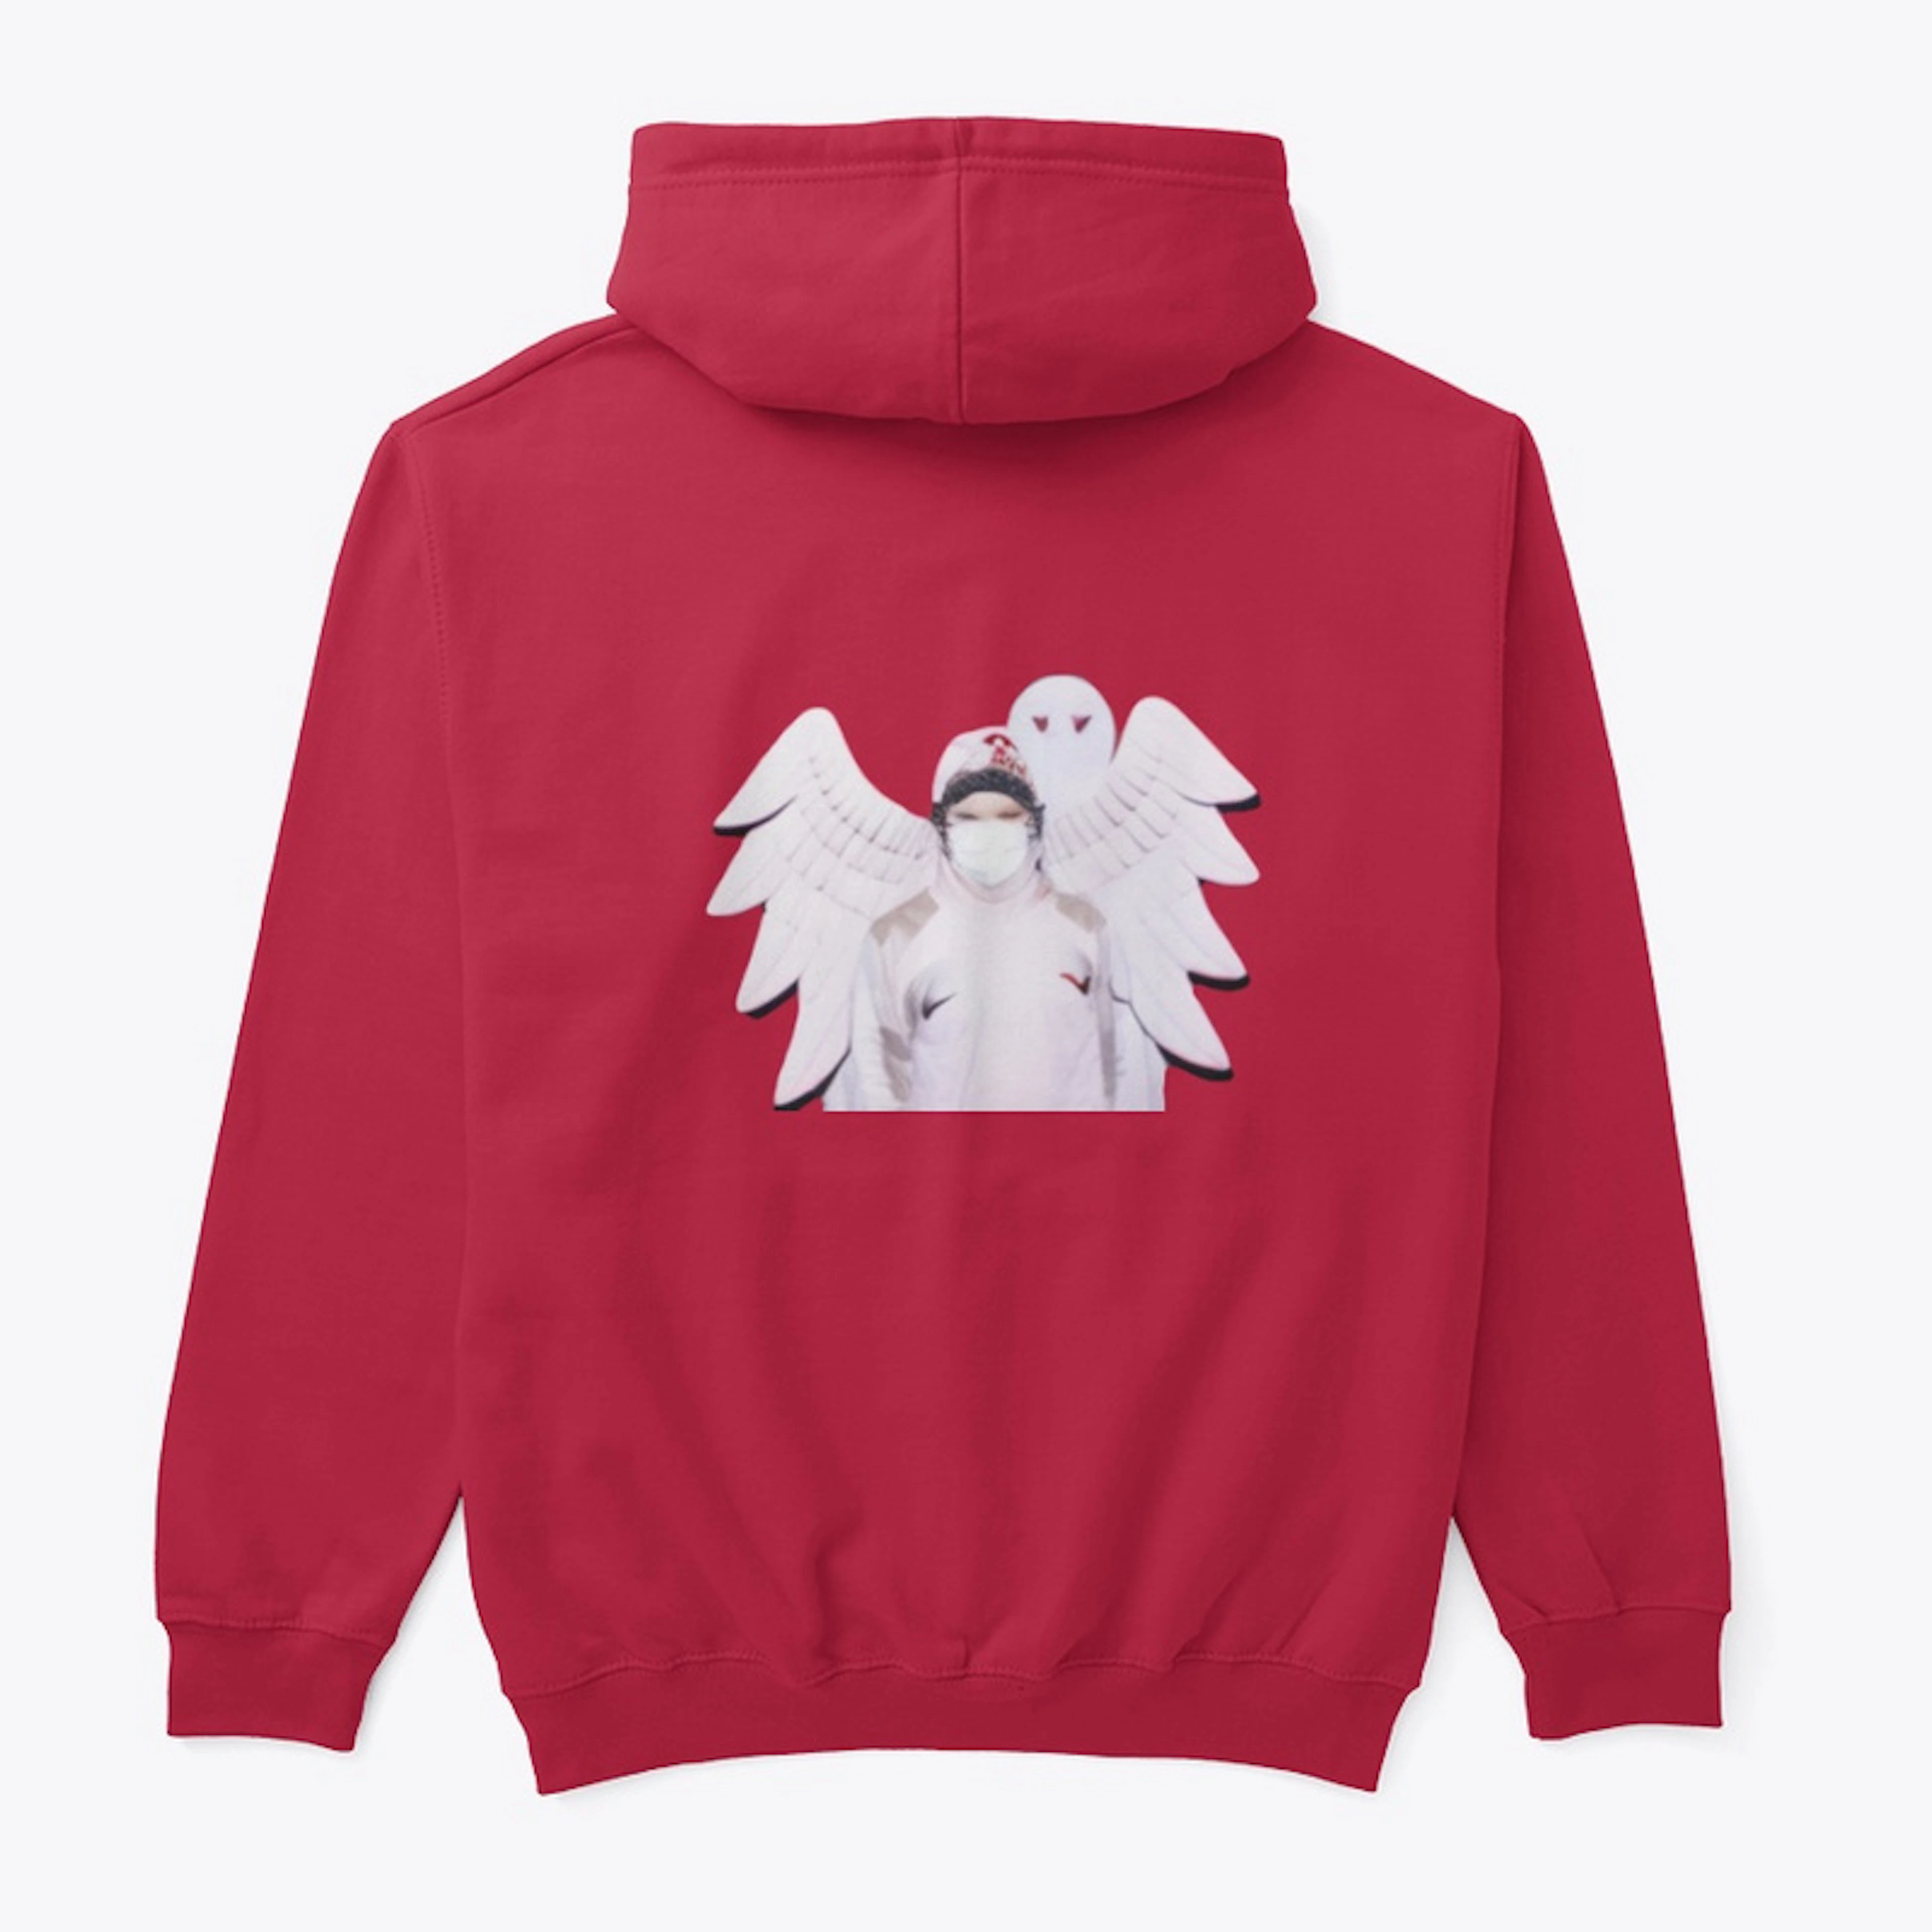 angel hoodie